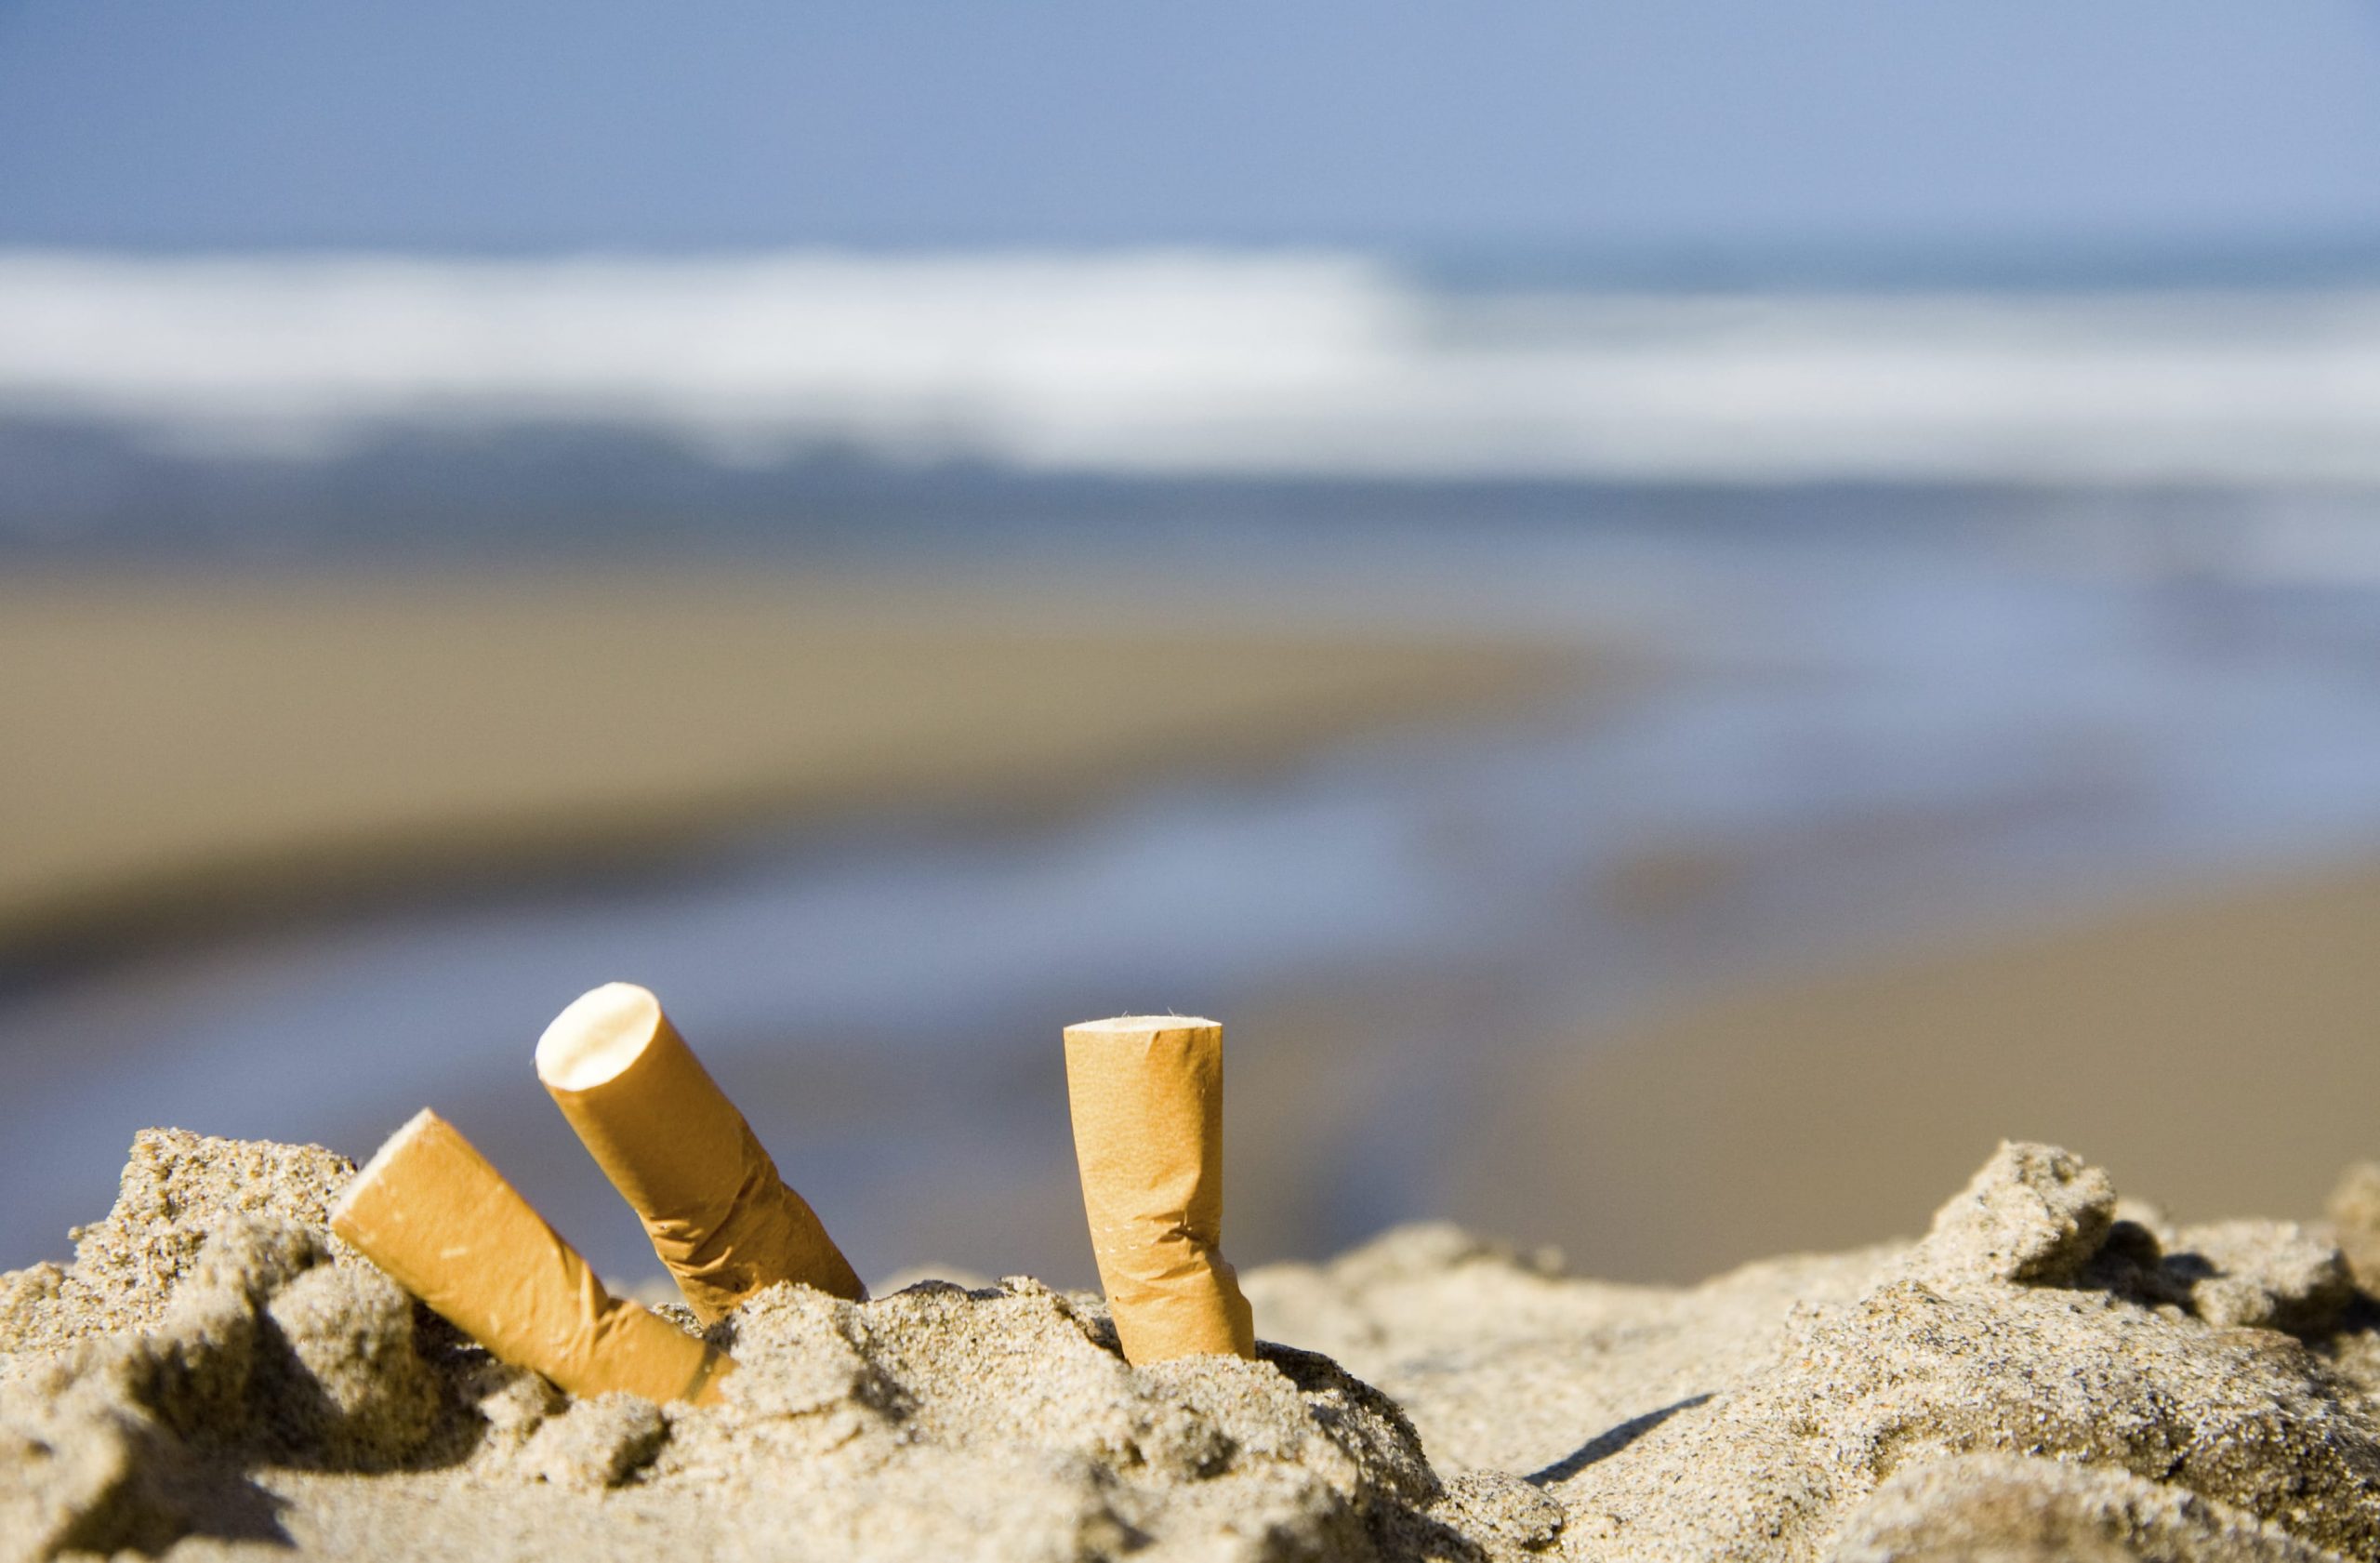 Le sigarette rappresentano il 40% dei rifiuti del Mediterraneo: in Italia 14 miliardi di cicche finiscono nell'ambiente